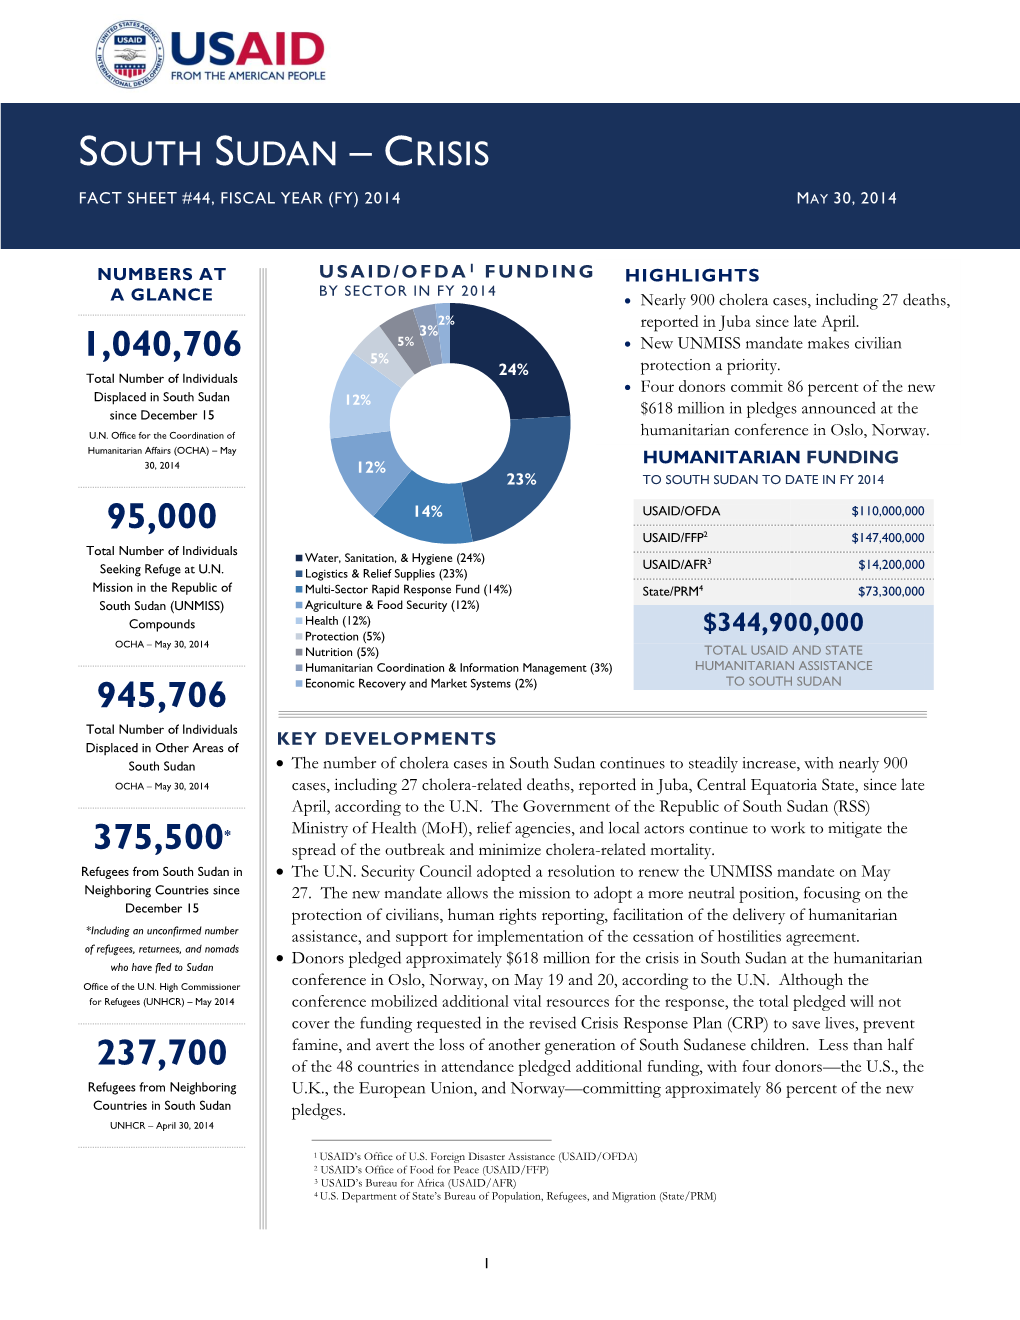 South Sudan Crisis Fact Sheet #44 May 30, 2014